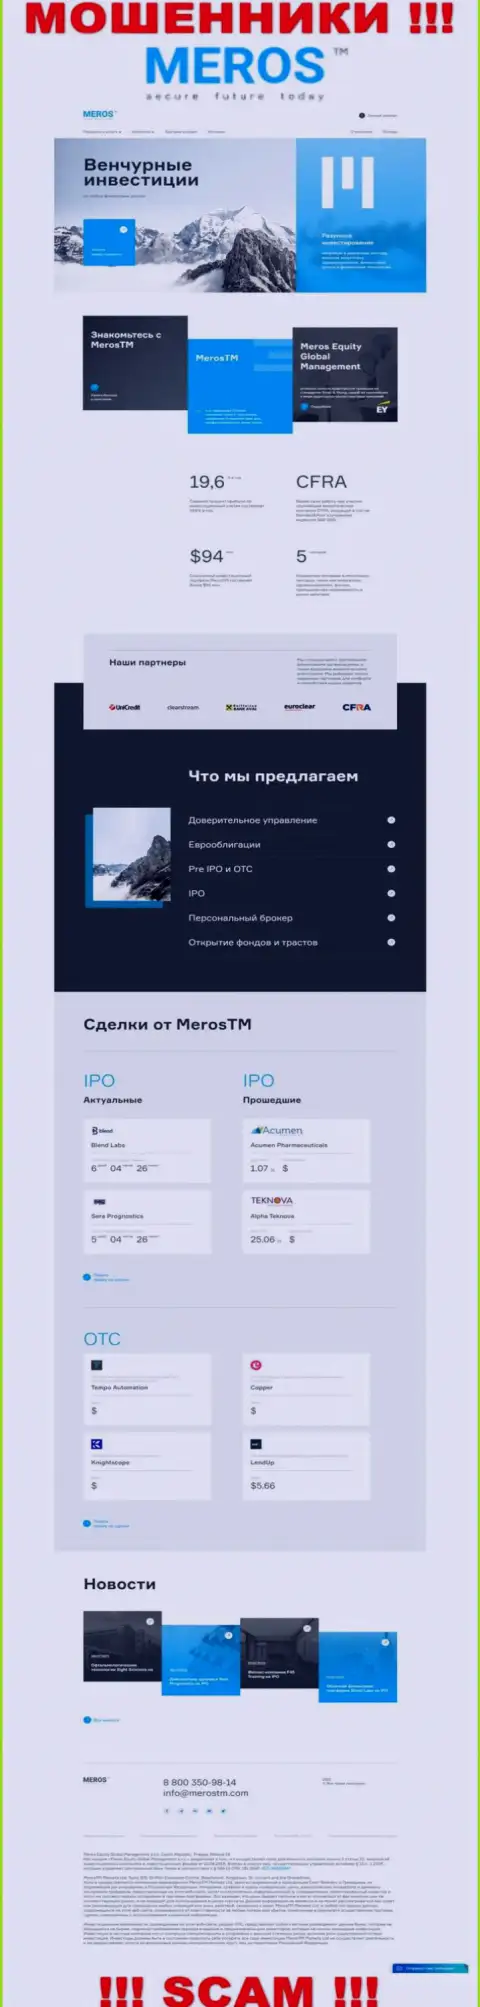 Обзор официального сервиса мошенников MerosTM Com